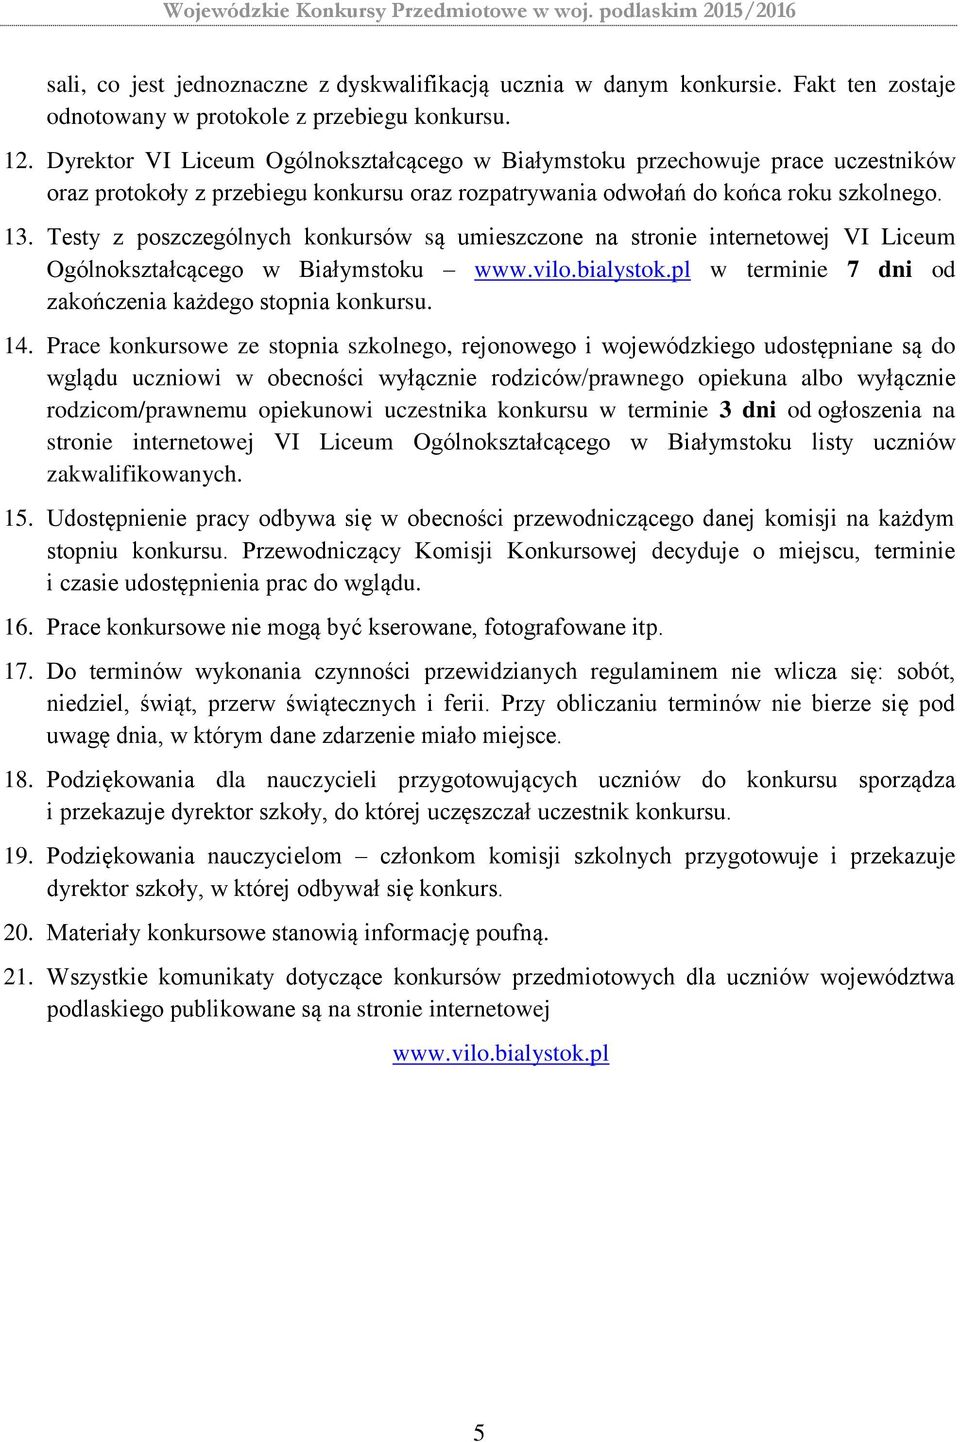 Testy z poszczególnych konkursów są umieszczone na stronie internetowej VI Liceum Ogólnokształcącego w Białymstoku www.vilo.bialystok.pl w terminie 7 dni od zakończenia każdego stopnia konkursu. 14.